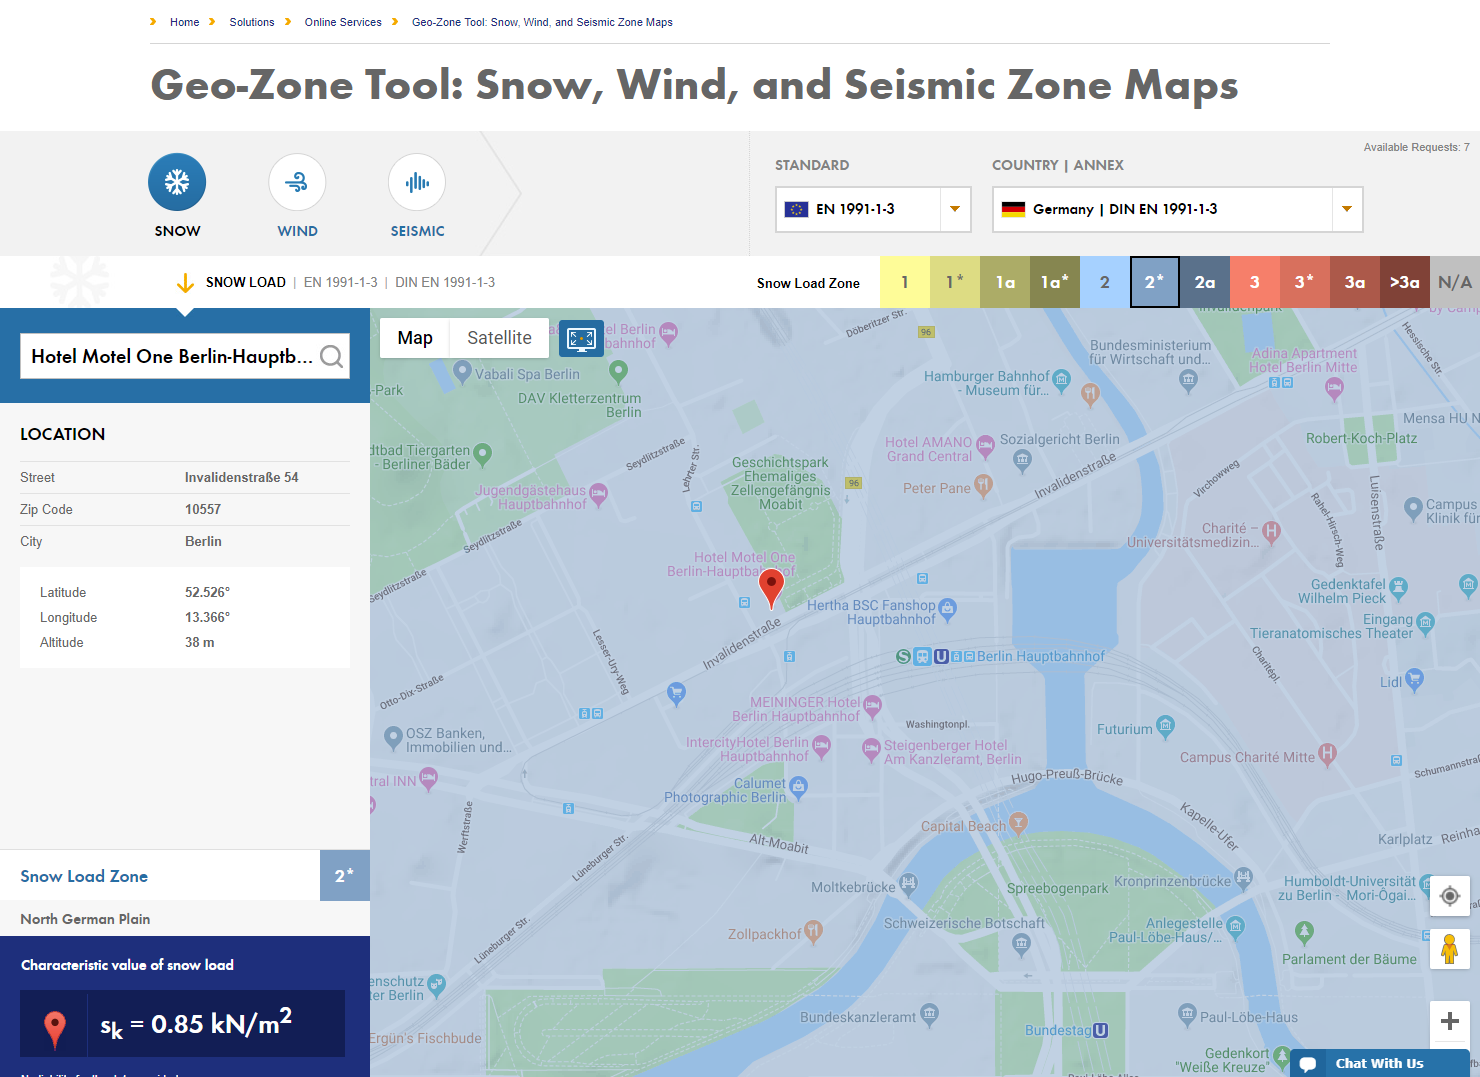 Szczegółowe wyszukiwanie lokalizacji w celu określenia charakterystycznego obciążenia śniegiem